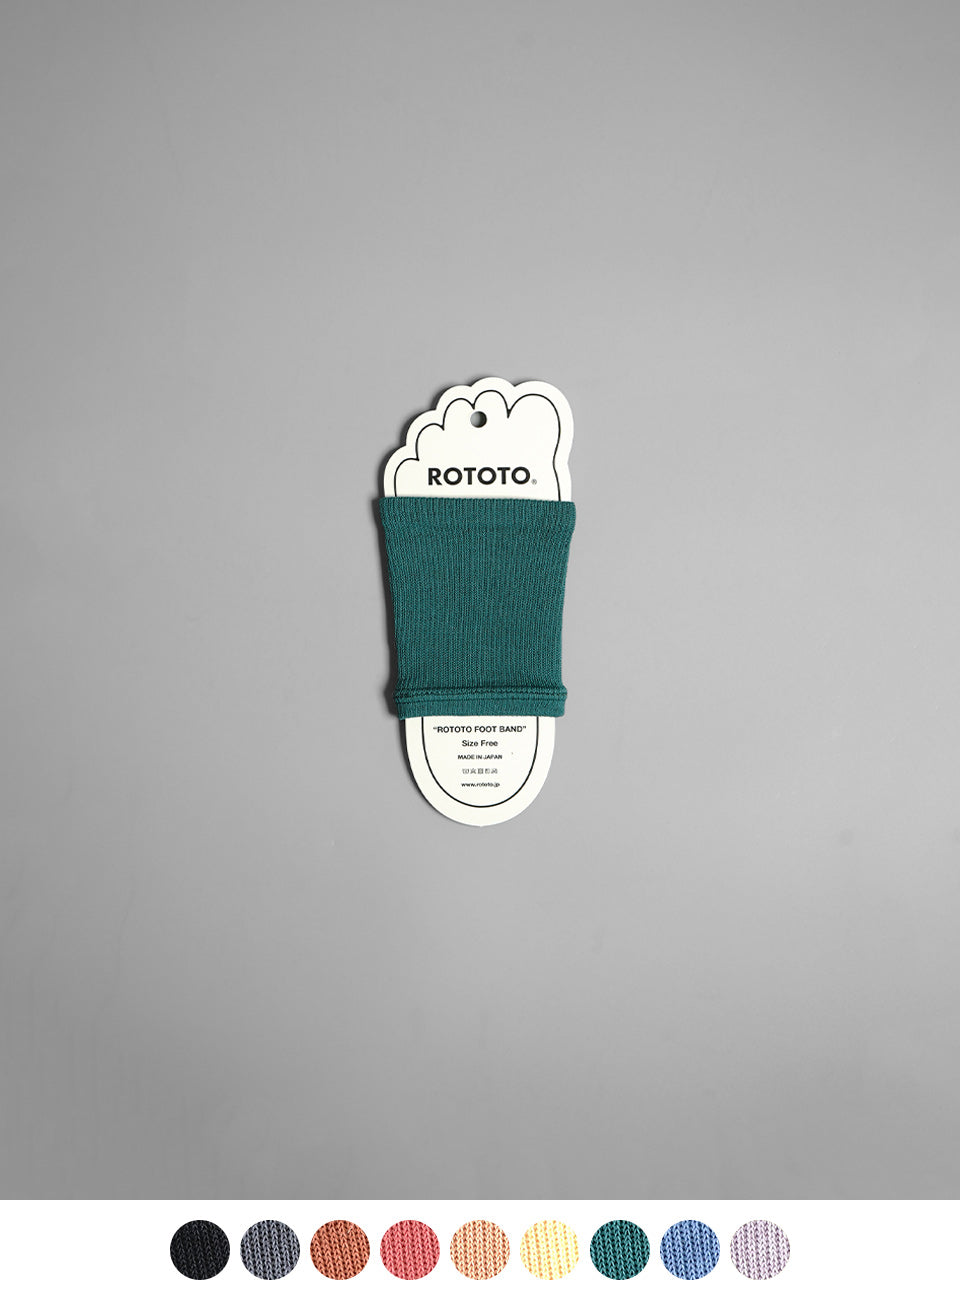 ROTOTO ロトト フットバンド ”リサイクル ポリエステル & オーガニック コットン 靴下 R1457【メール便可】